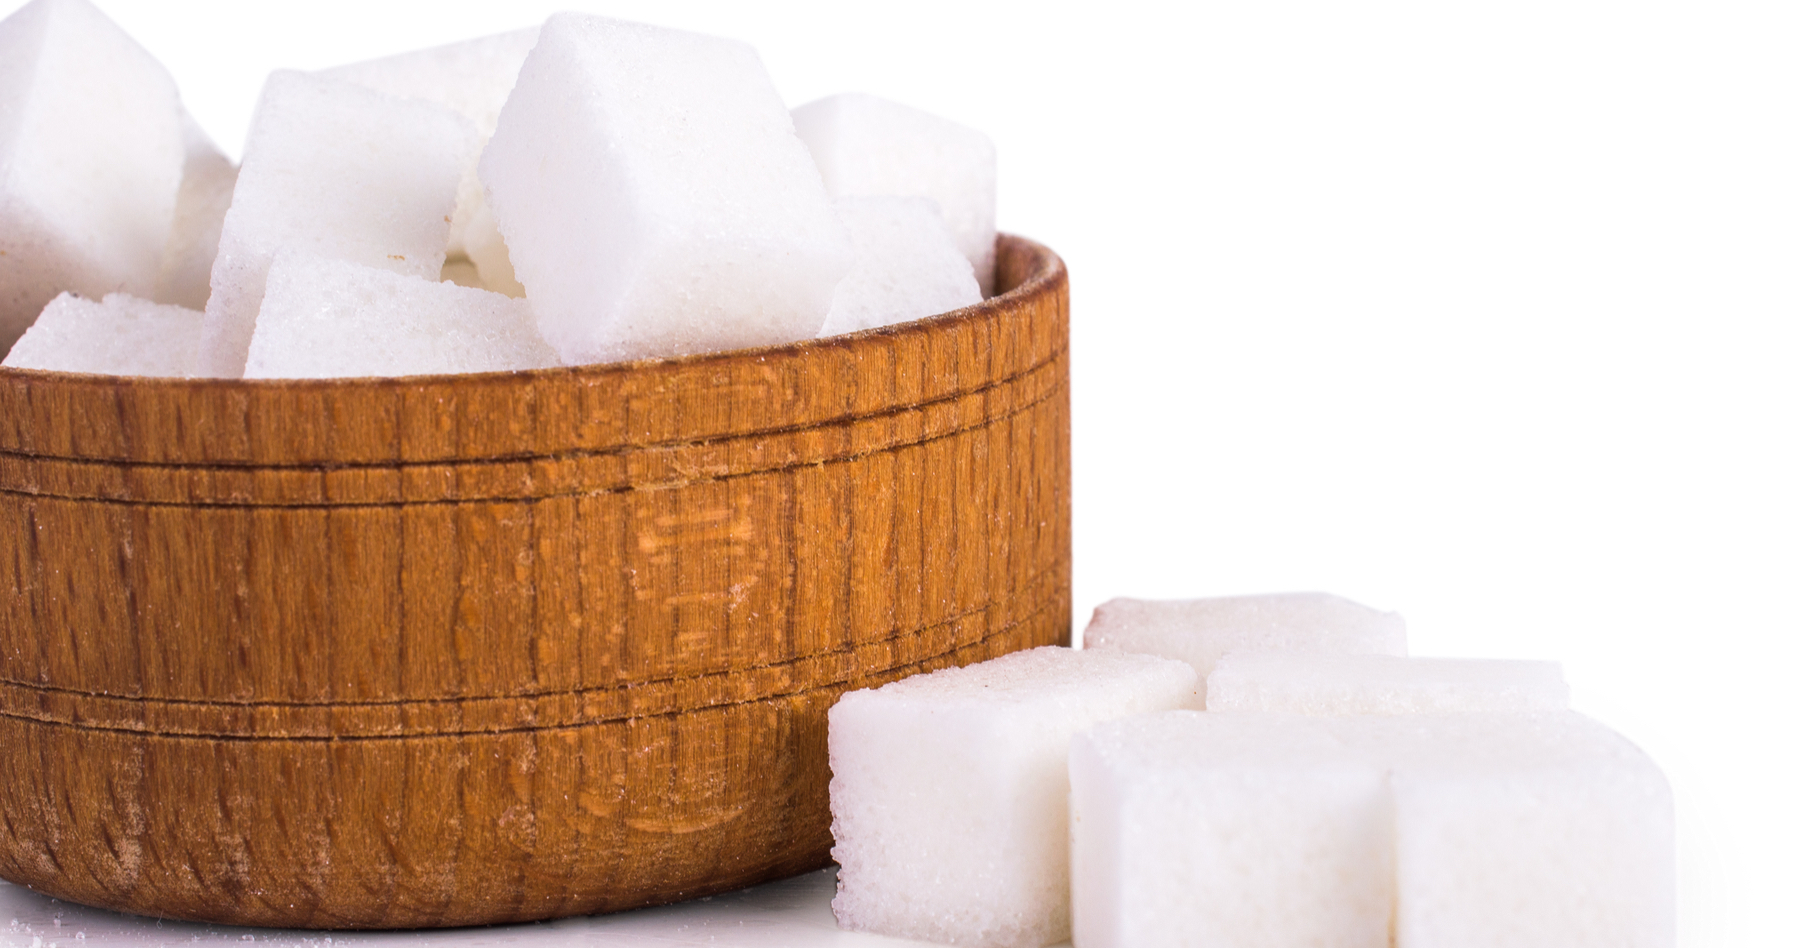 La fabrication du sucre est tout un art. La France est le 10e producteur de sucre au monde. En 2015-2016, pas moins de 3 millions de tonnes de sucre ont été utilisées dans notre pays et la filière a généré un chiffre d’affaire de quelque 4,3 milliards d'euros. © MsMaria, Shutterstock